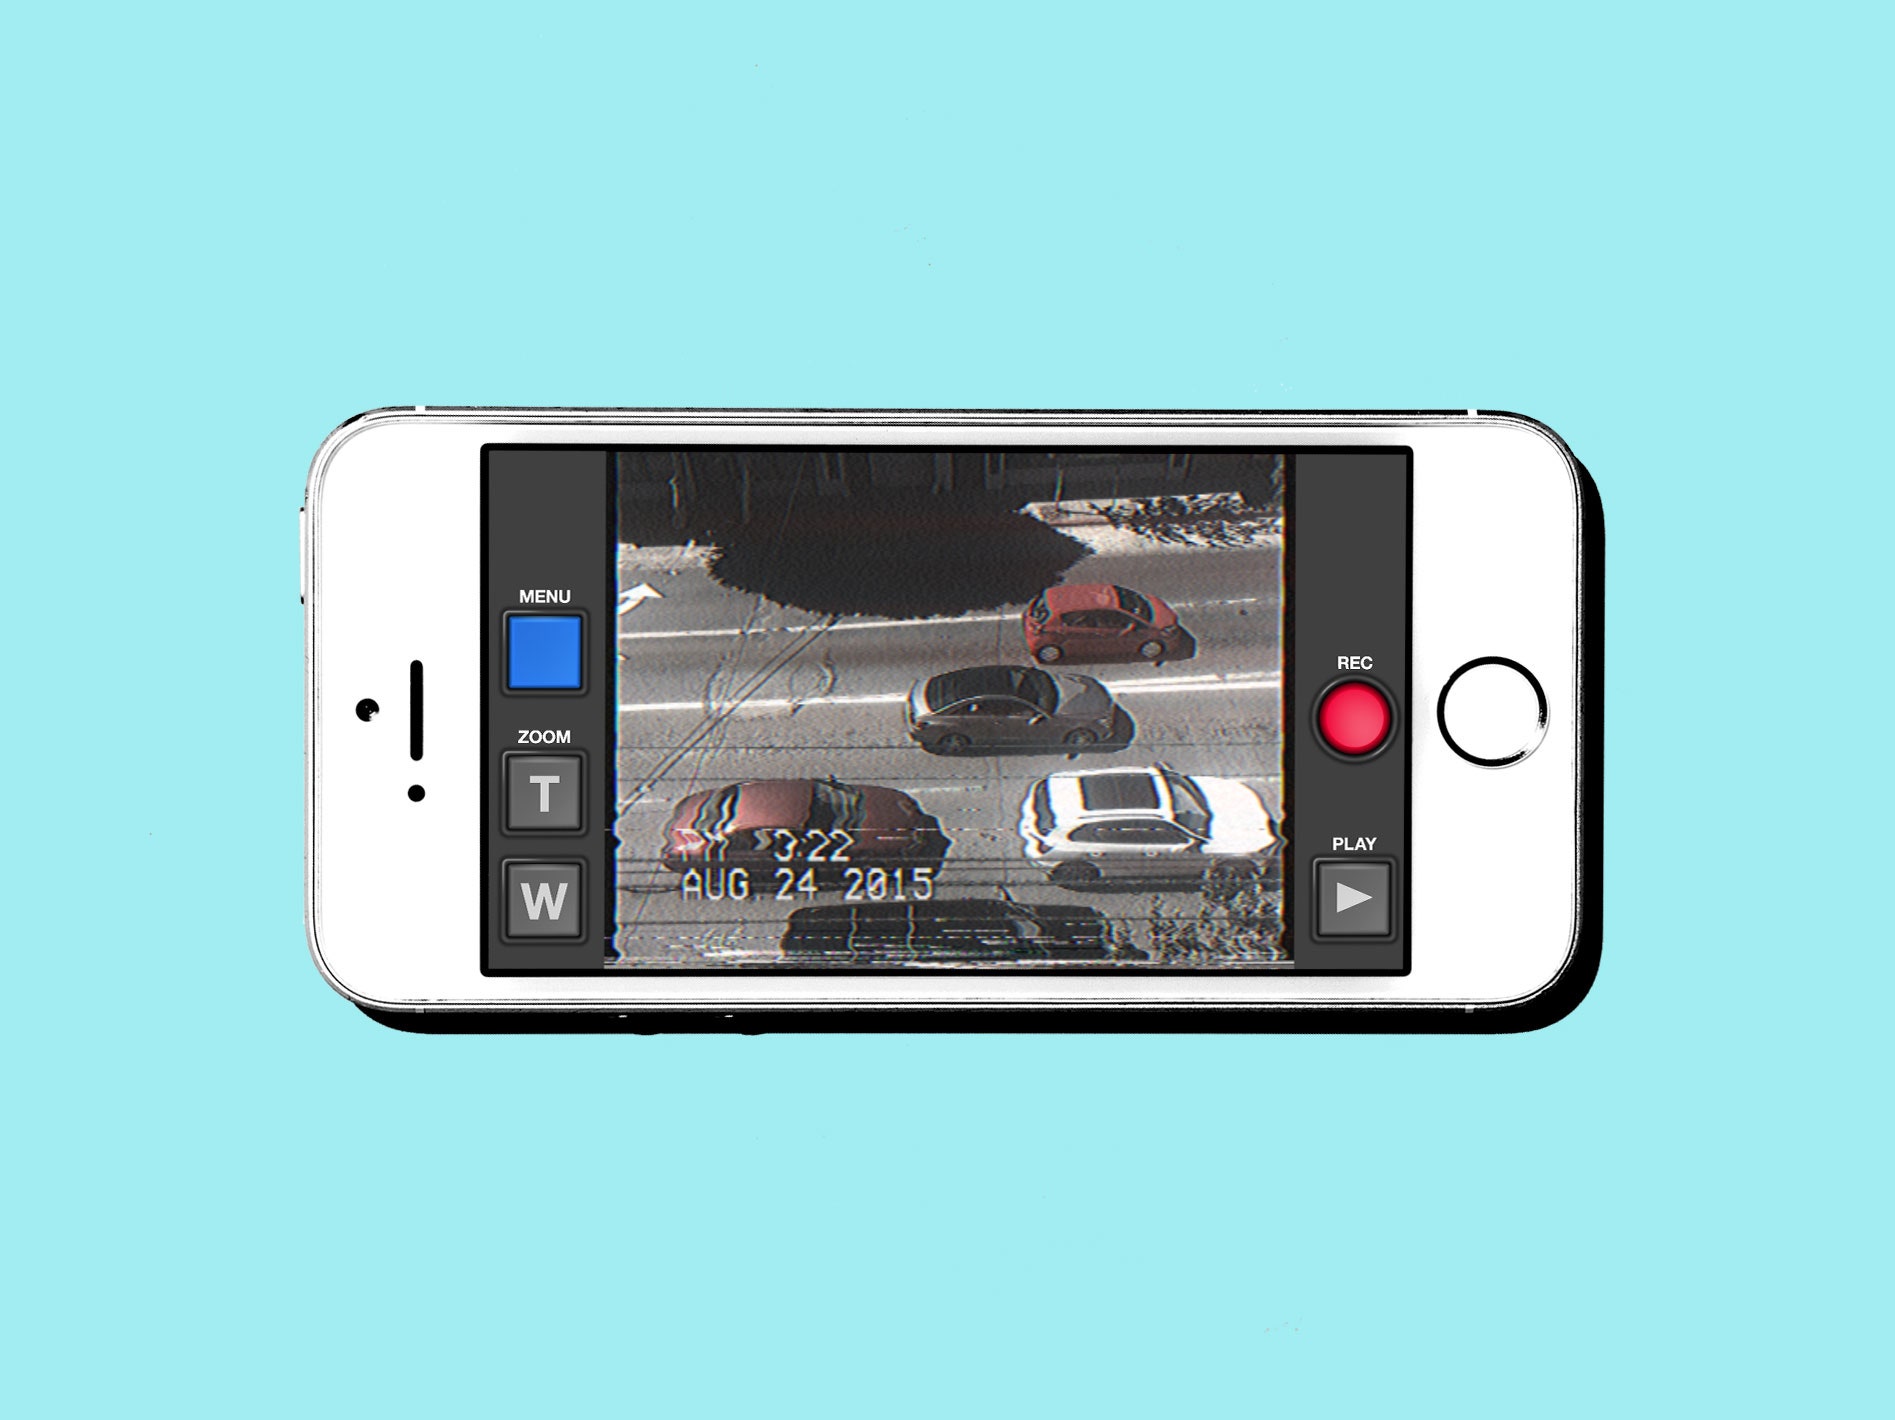 Comment une application de caméscope rétro a conquis le cœur des utilisateurs d’iPhone